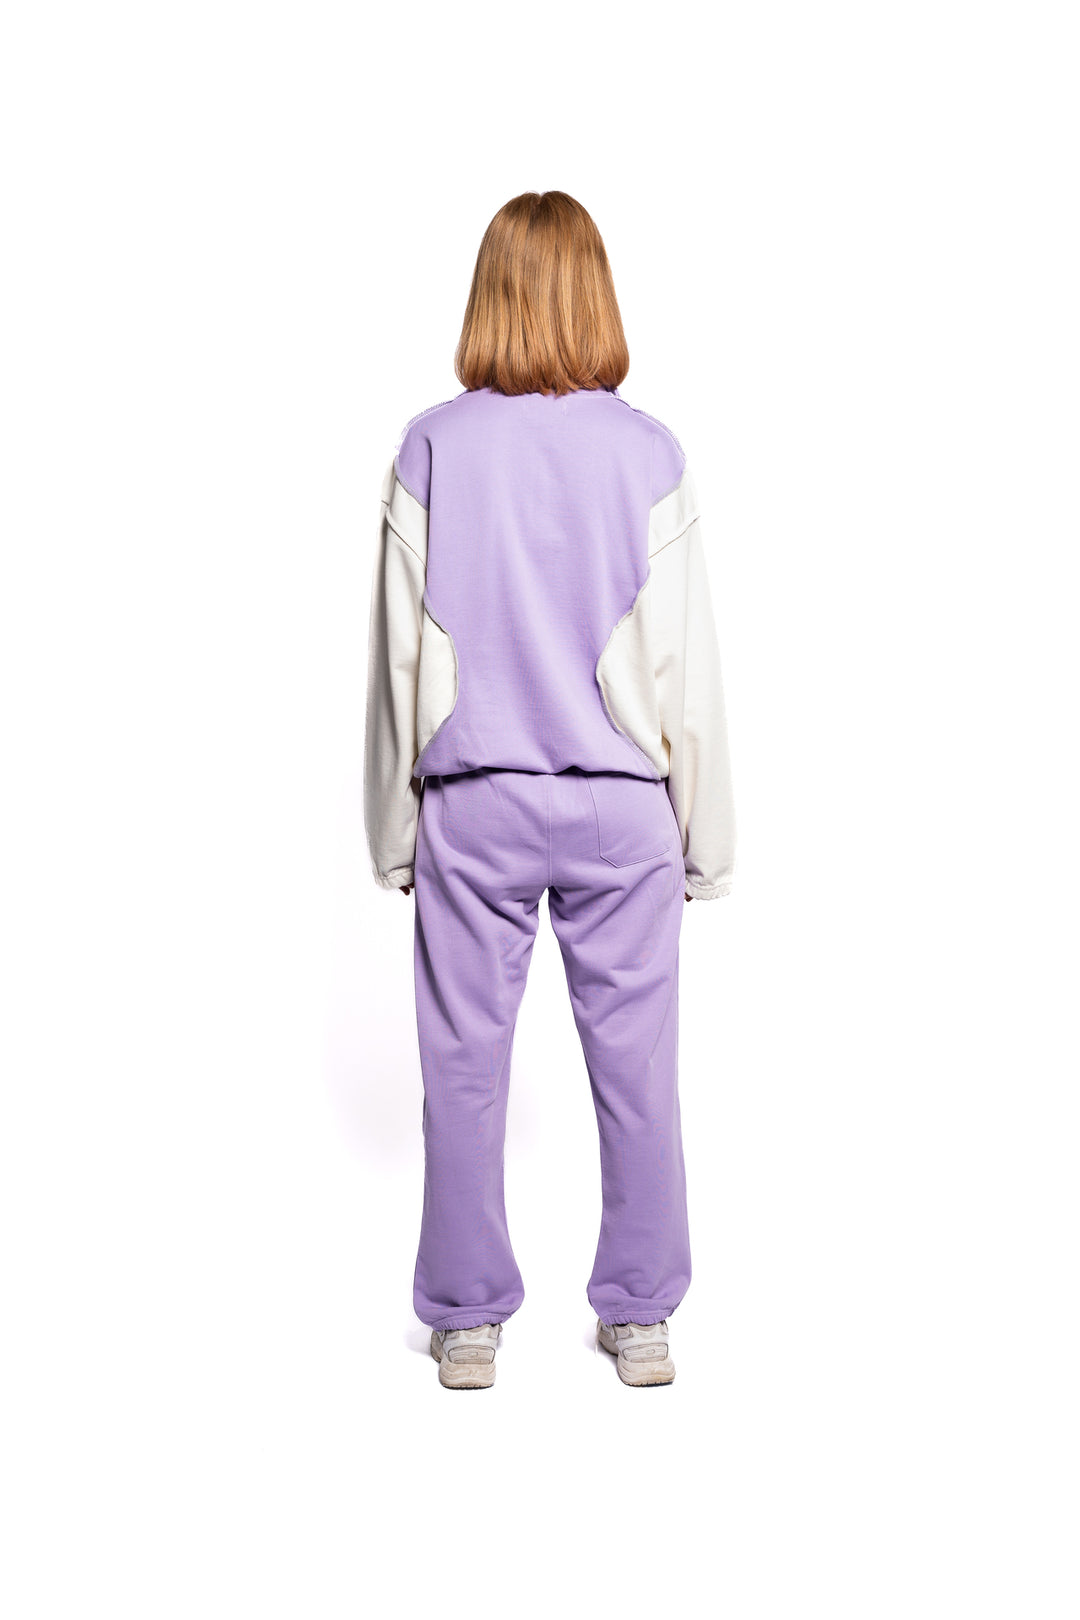 Rückansicht des Decider Jogger-Sets für Frauen, bestehend aus Hoodie und Sweatpants in Lila mit dezenter Logo-Platzierung, präsentiert von einem weiblichen Model.